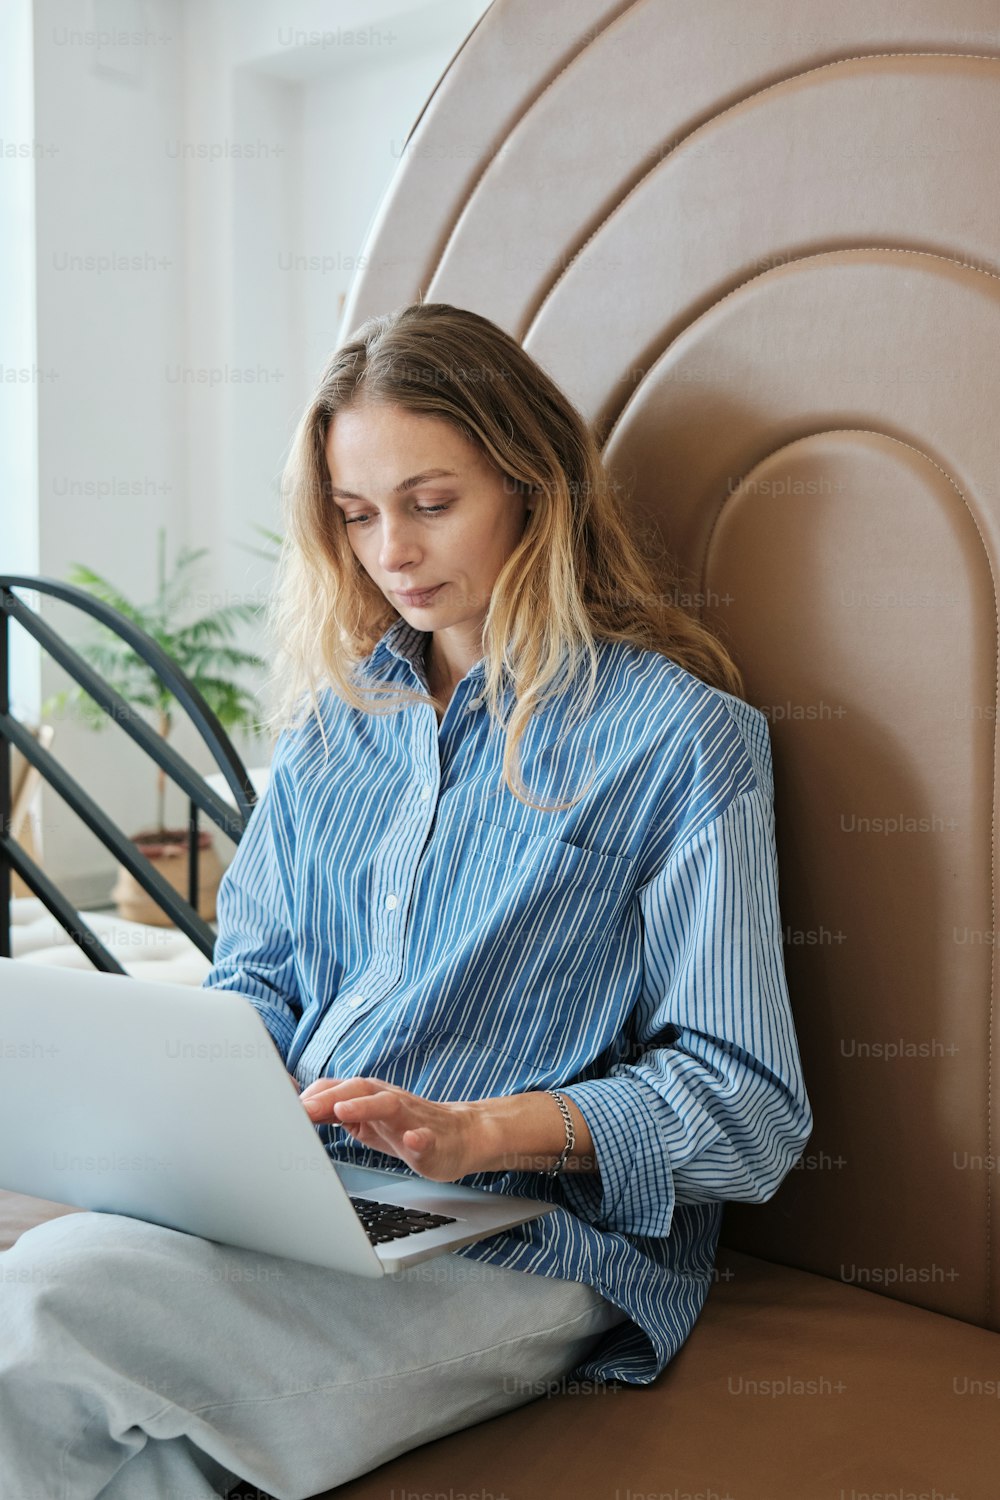 Una persona sentada en una silla usando una computadora portátil